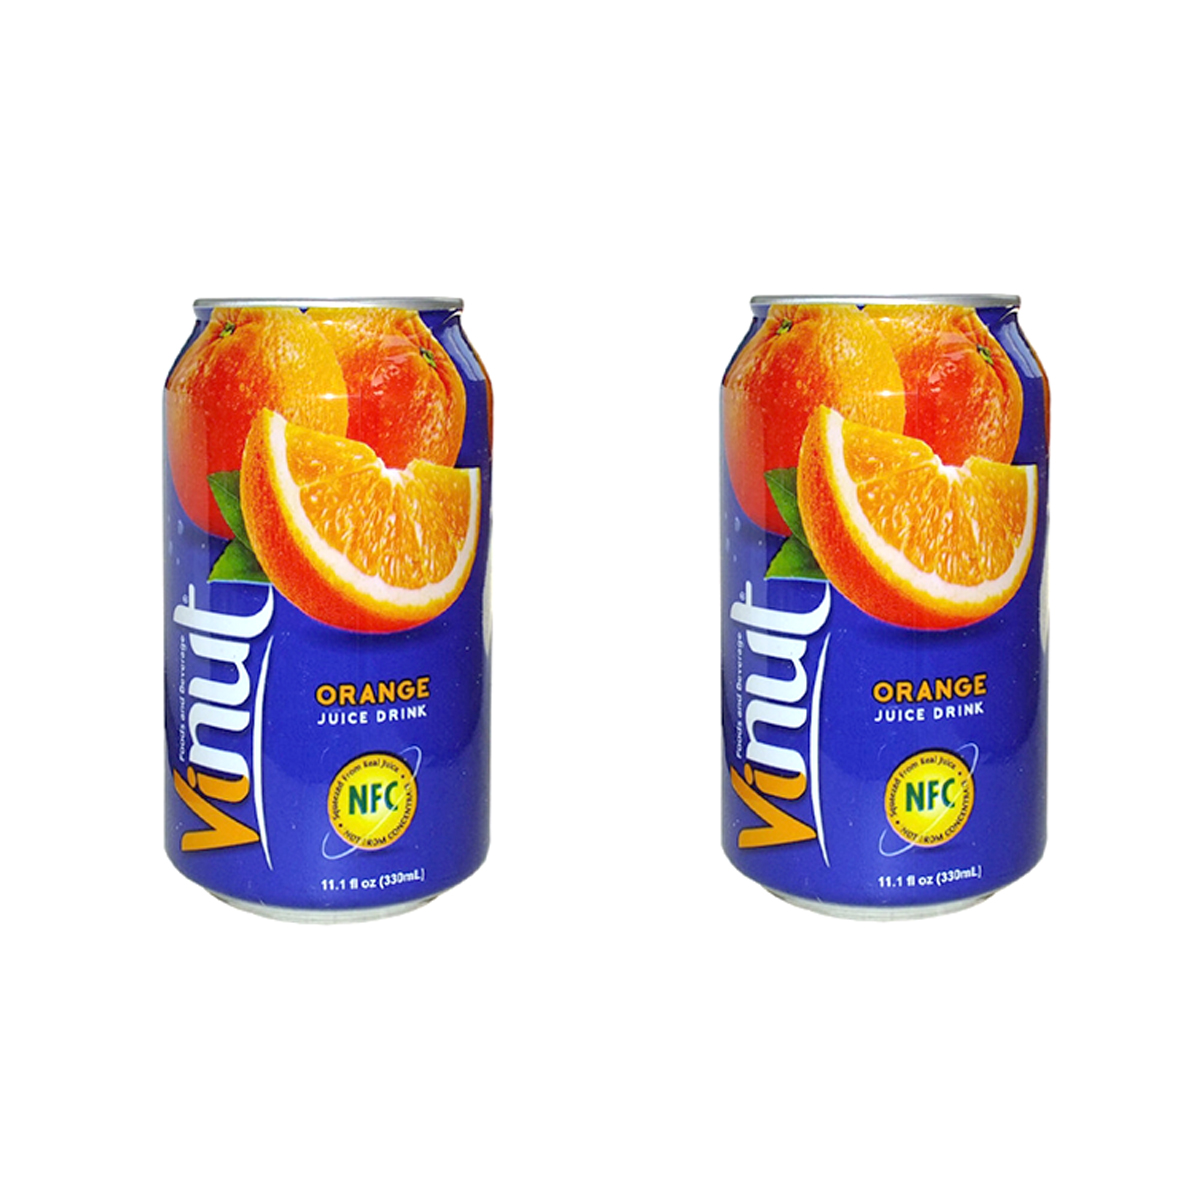 Сокосодержащий напиток Vinut 30%, апельсин, 2 шт по 330 мл